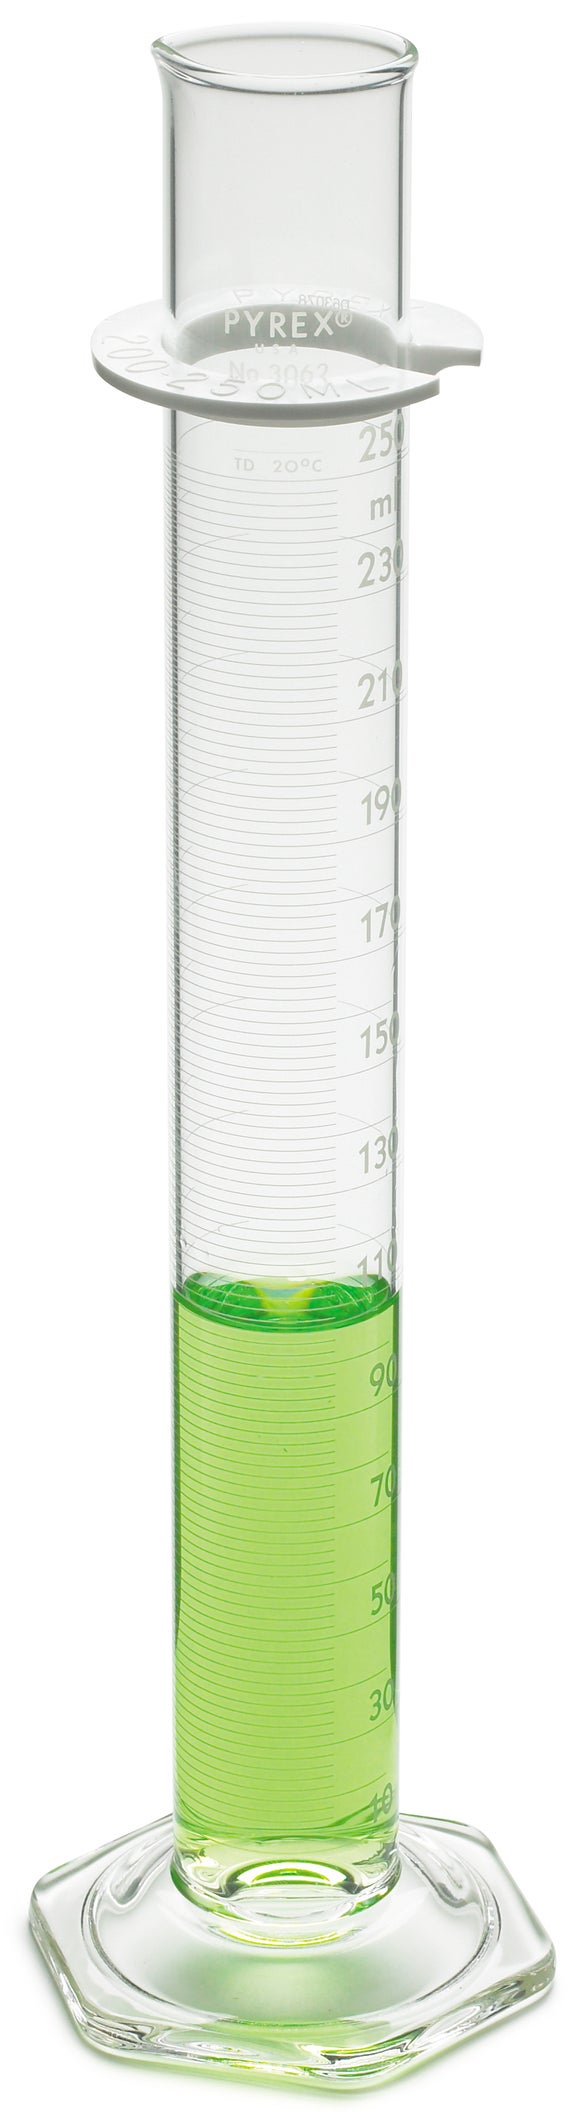 Zylinder, mit Skala, zertifiziert, 25 mL